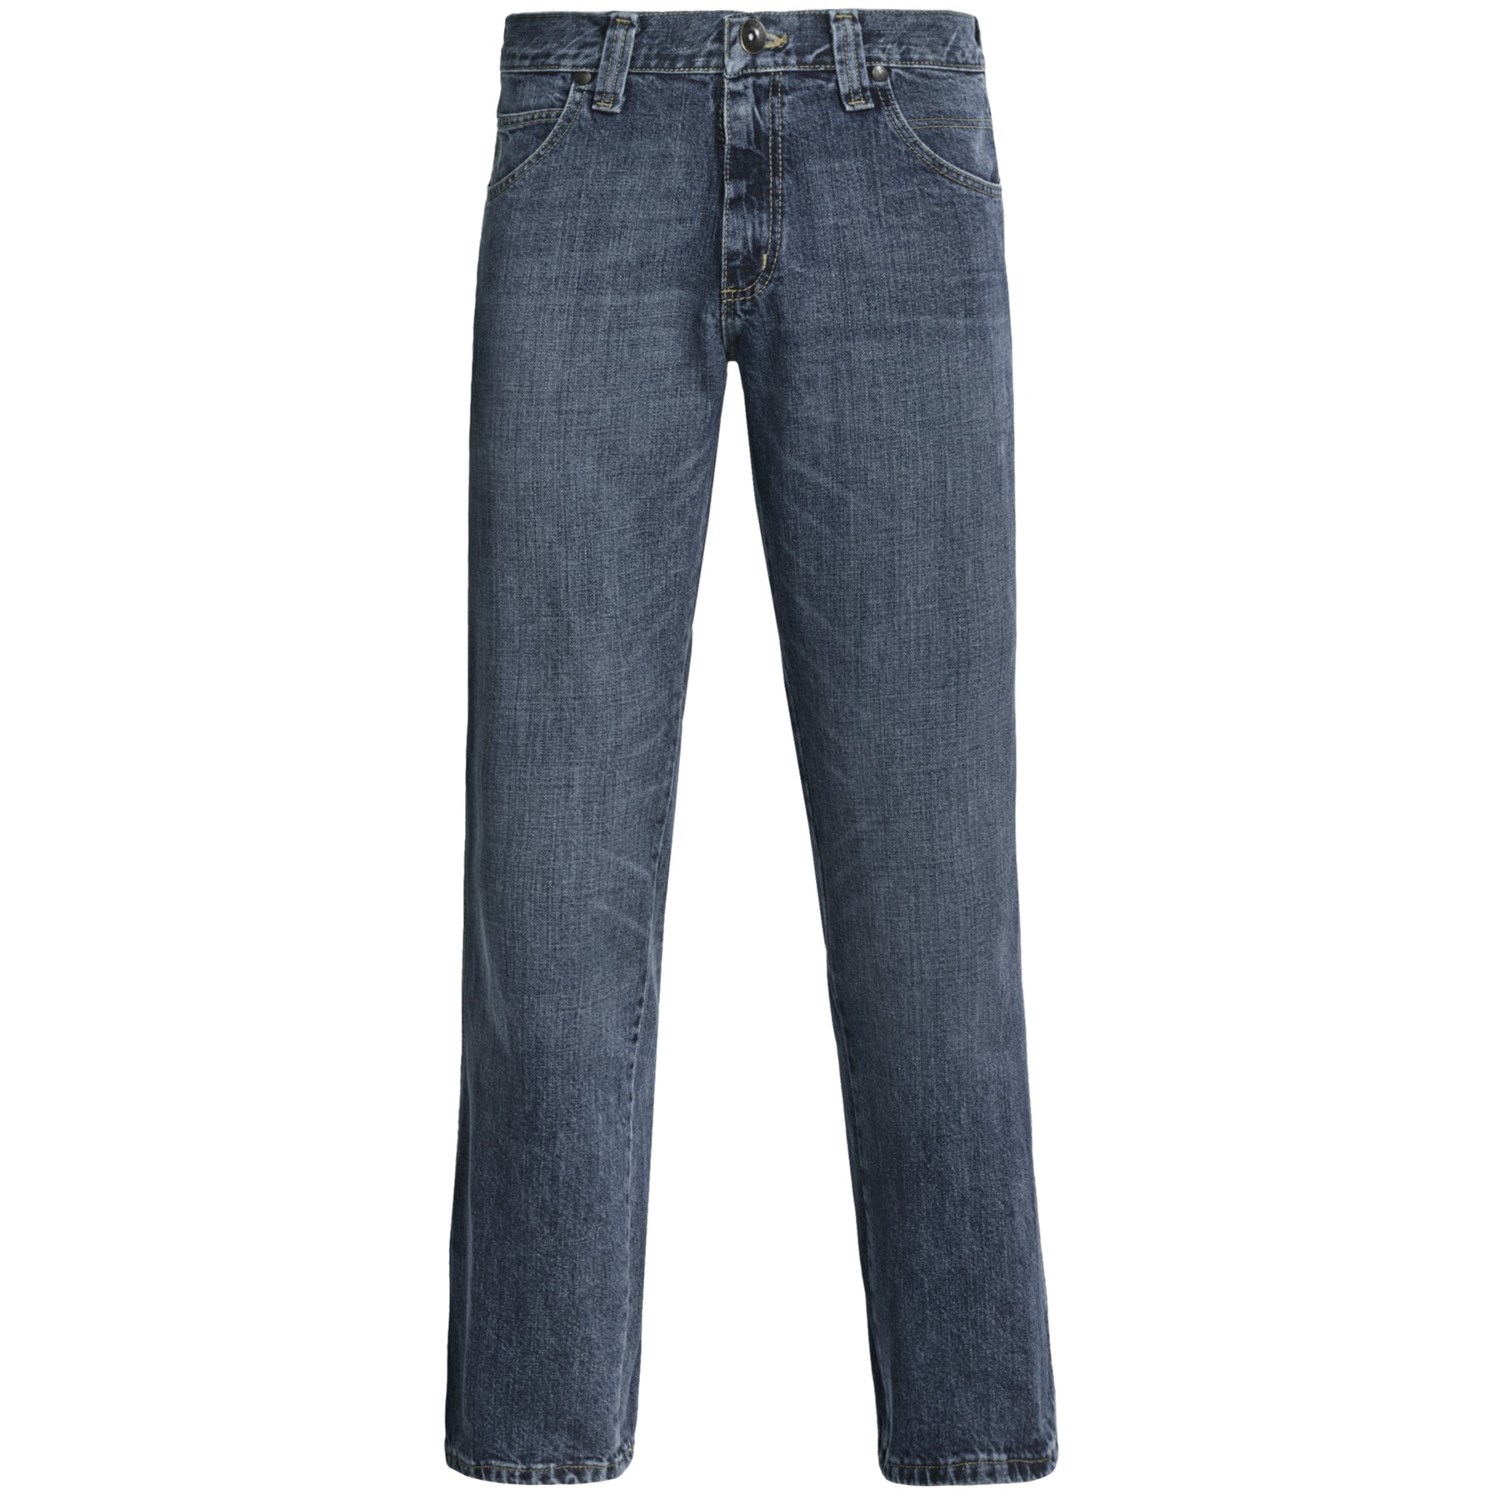 Wrangler Retro IRS Jeans - Relaxed Fit, Straight Leg (For Men)